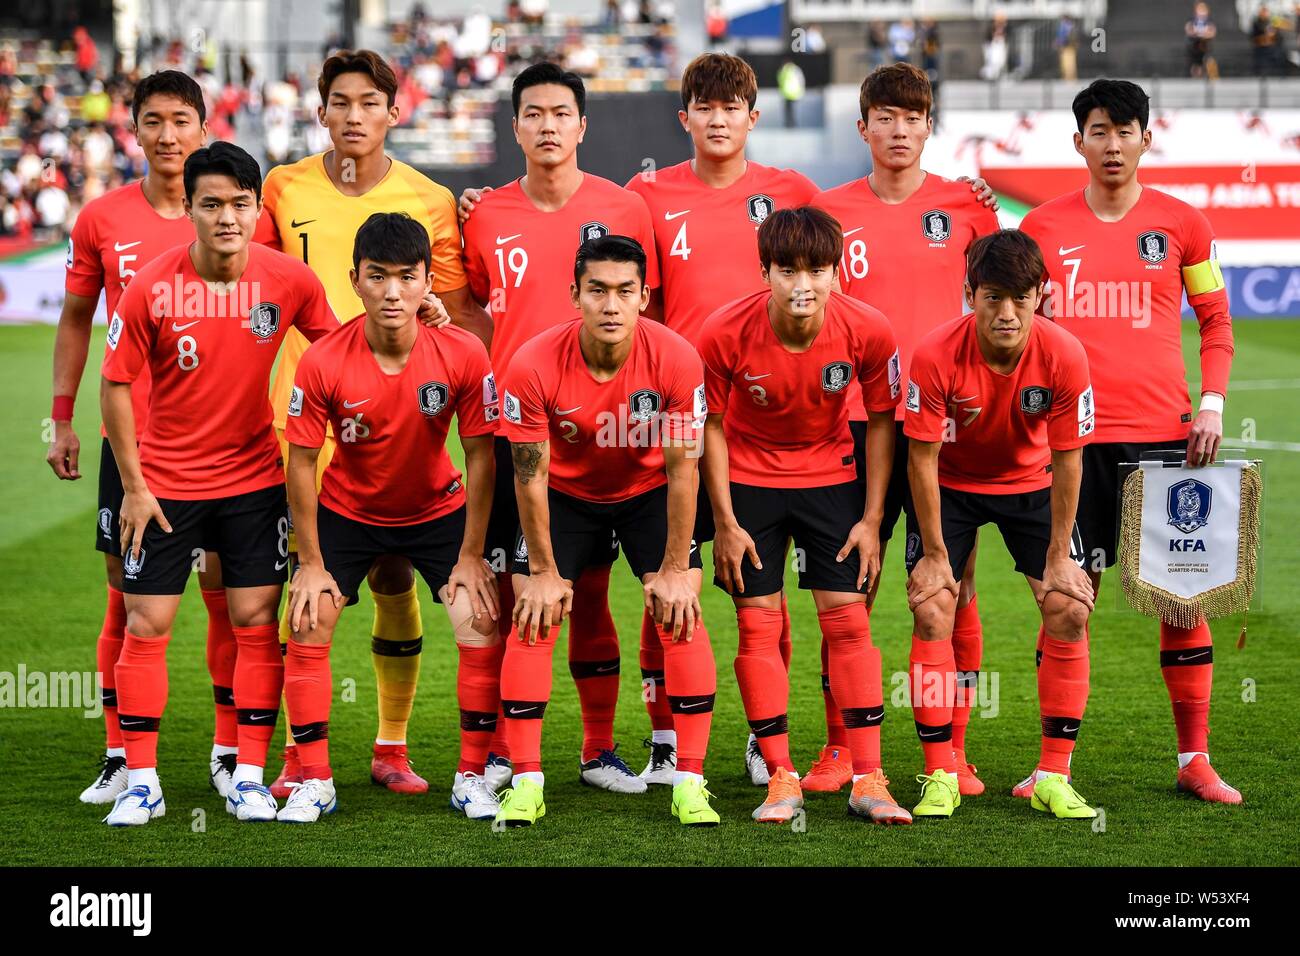 Les joueurs de l'équipe de départ de l'équipe nationale de football de la Corée du Sud posent avant la compétition contre l'équipe nationale de football du Qatar dans leur quart-fina Banque D'Images